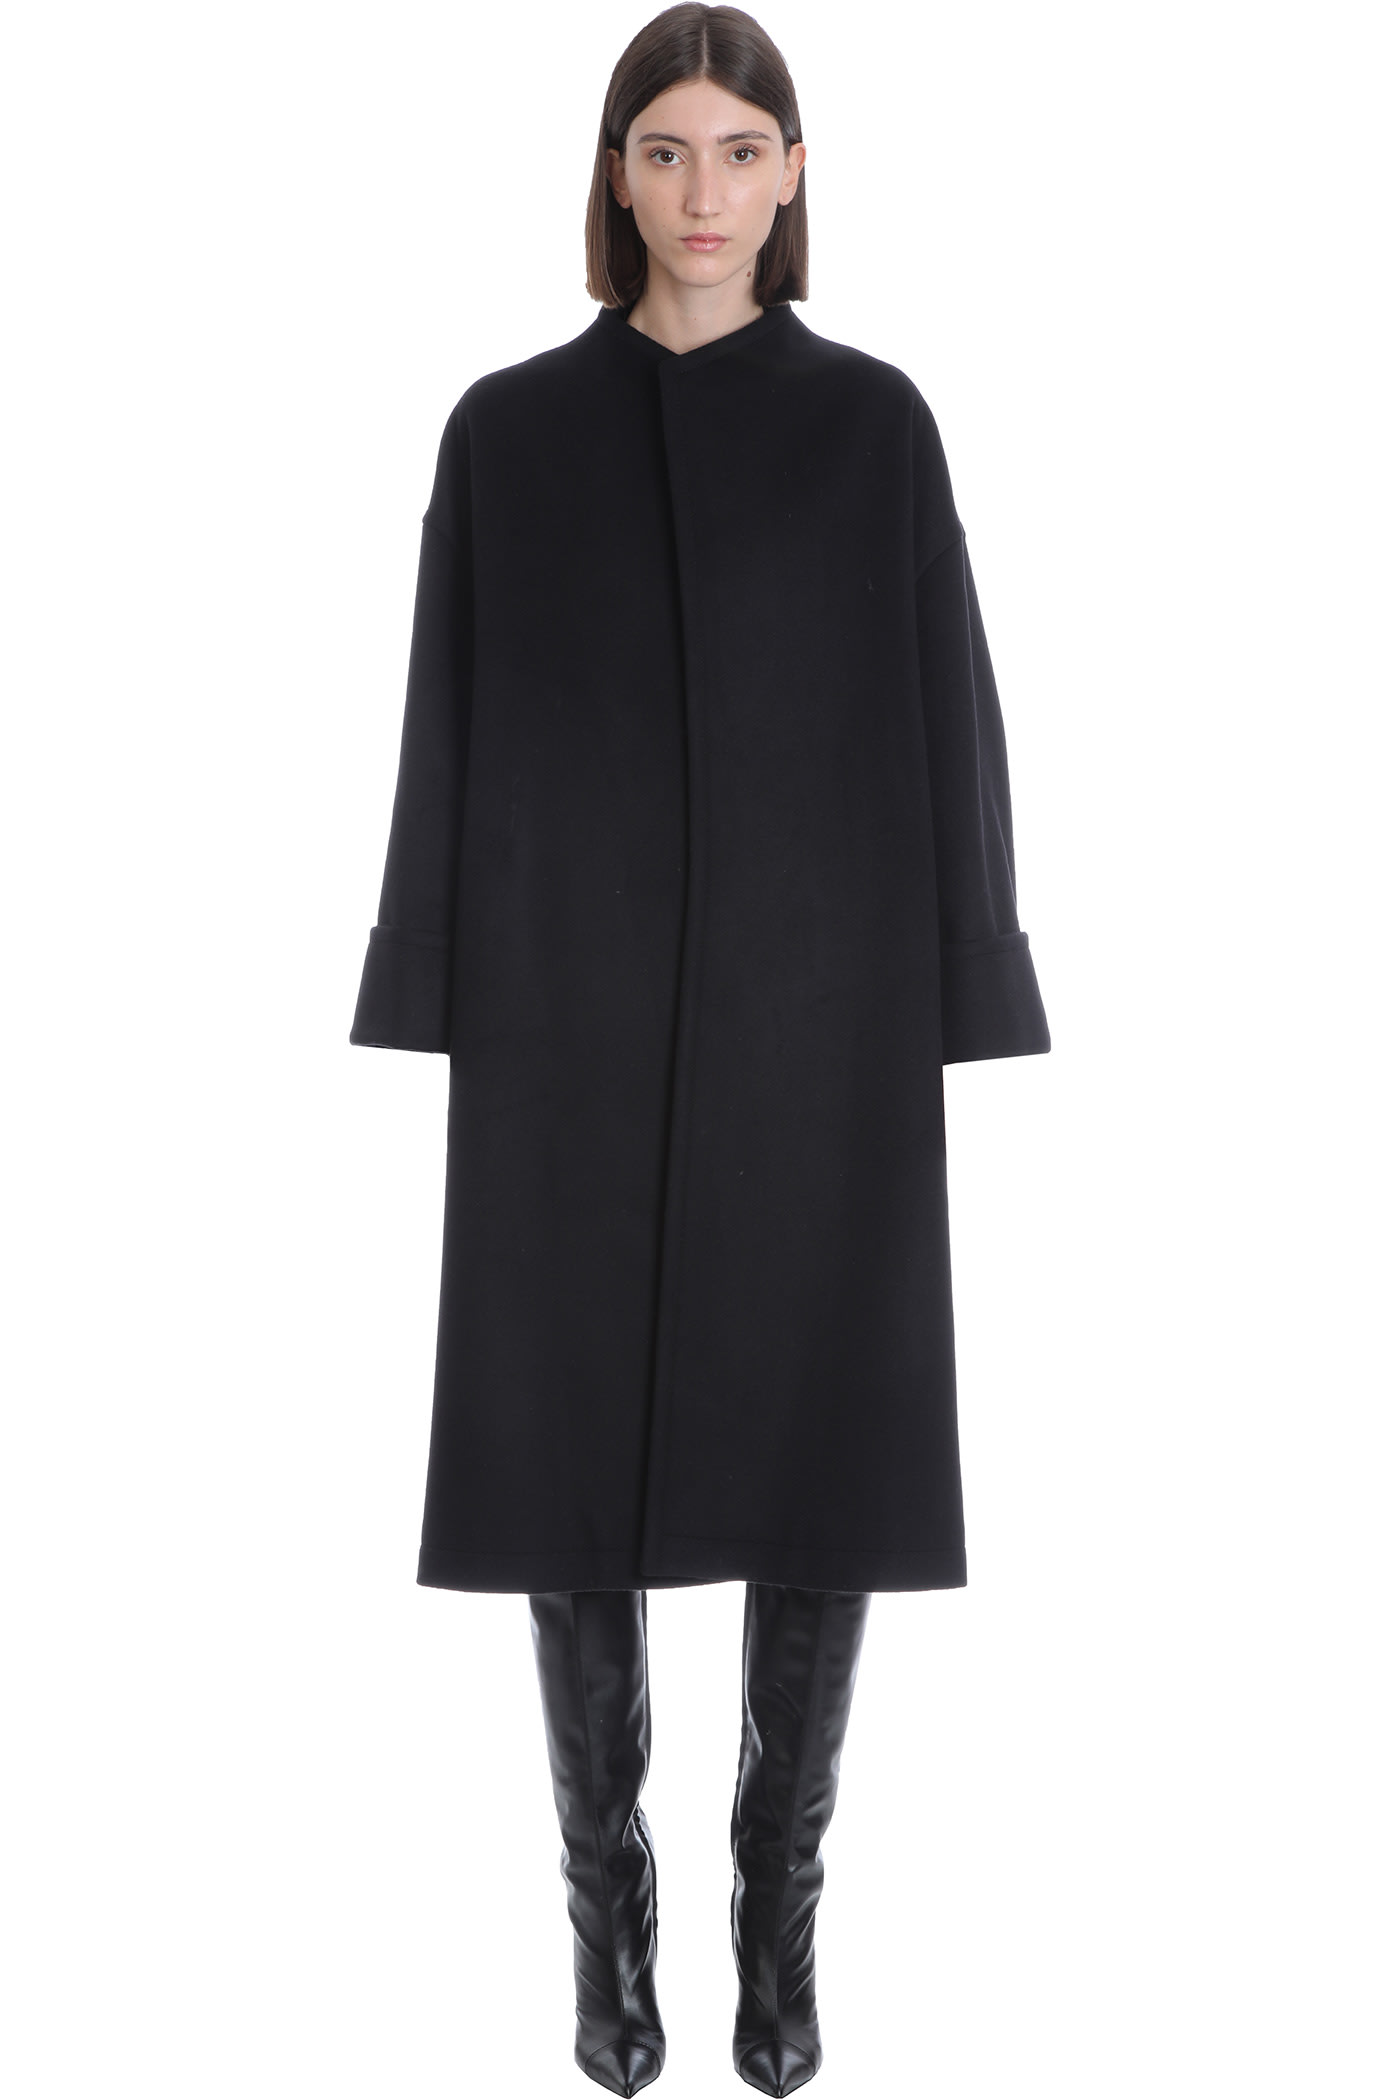 Alexandre Vauthier Coat In Black Wool